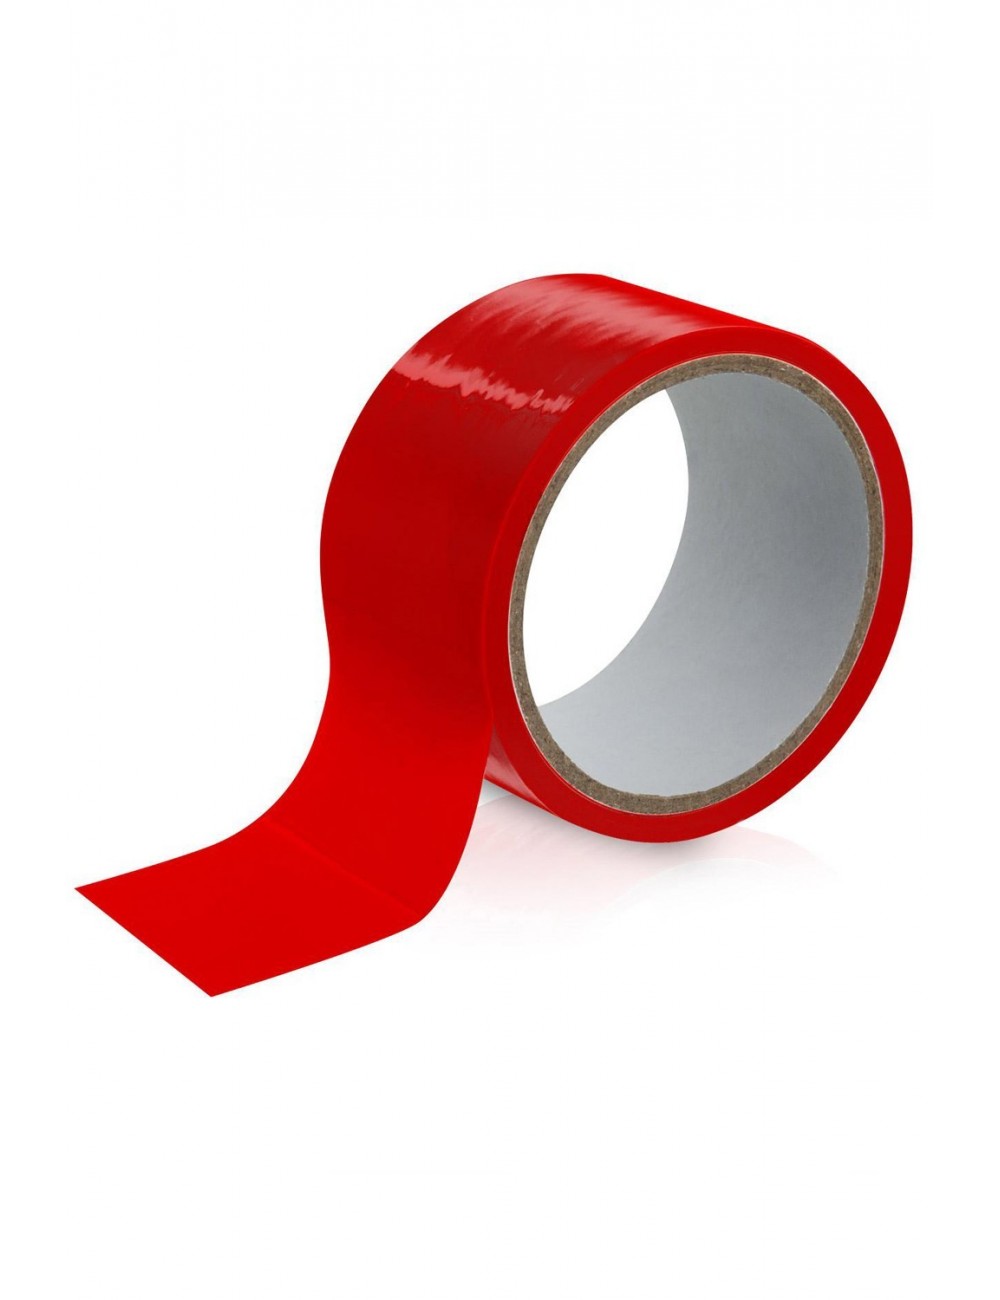 Sextoys - Bondage - SM - Tape ruban bdsm rouge soft pour jeux érotique - CC5051100030 - Fetish Tentation